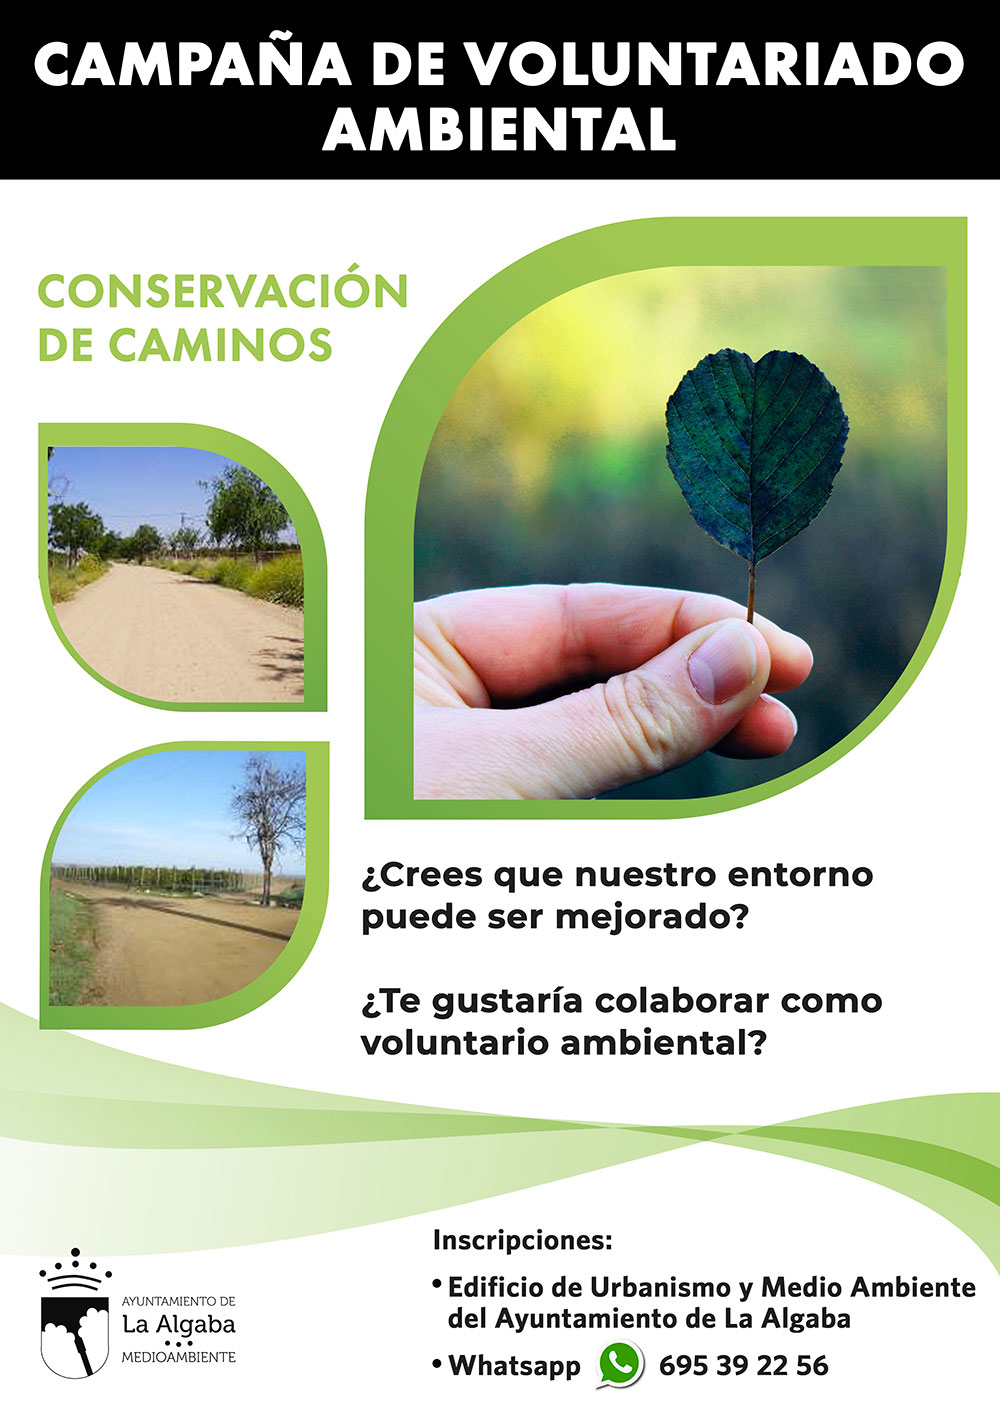 Campaña de Voluntariado ambiental para la conservación de nuestros caminos